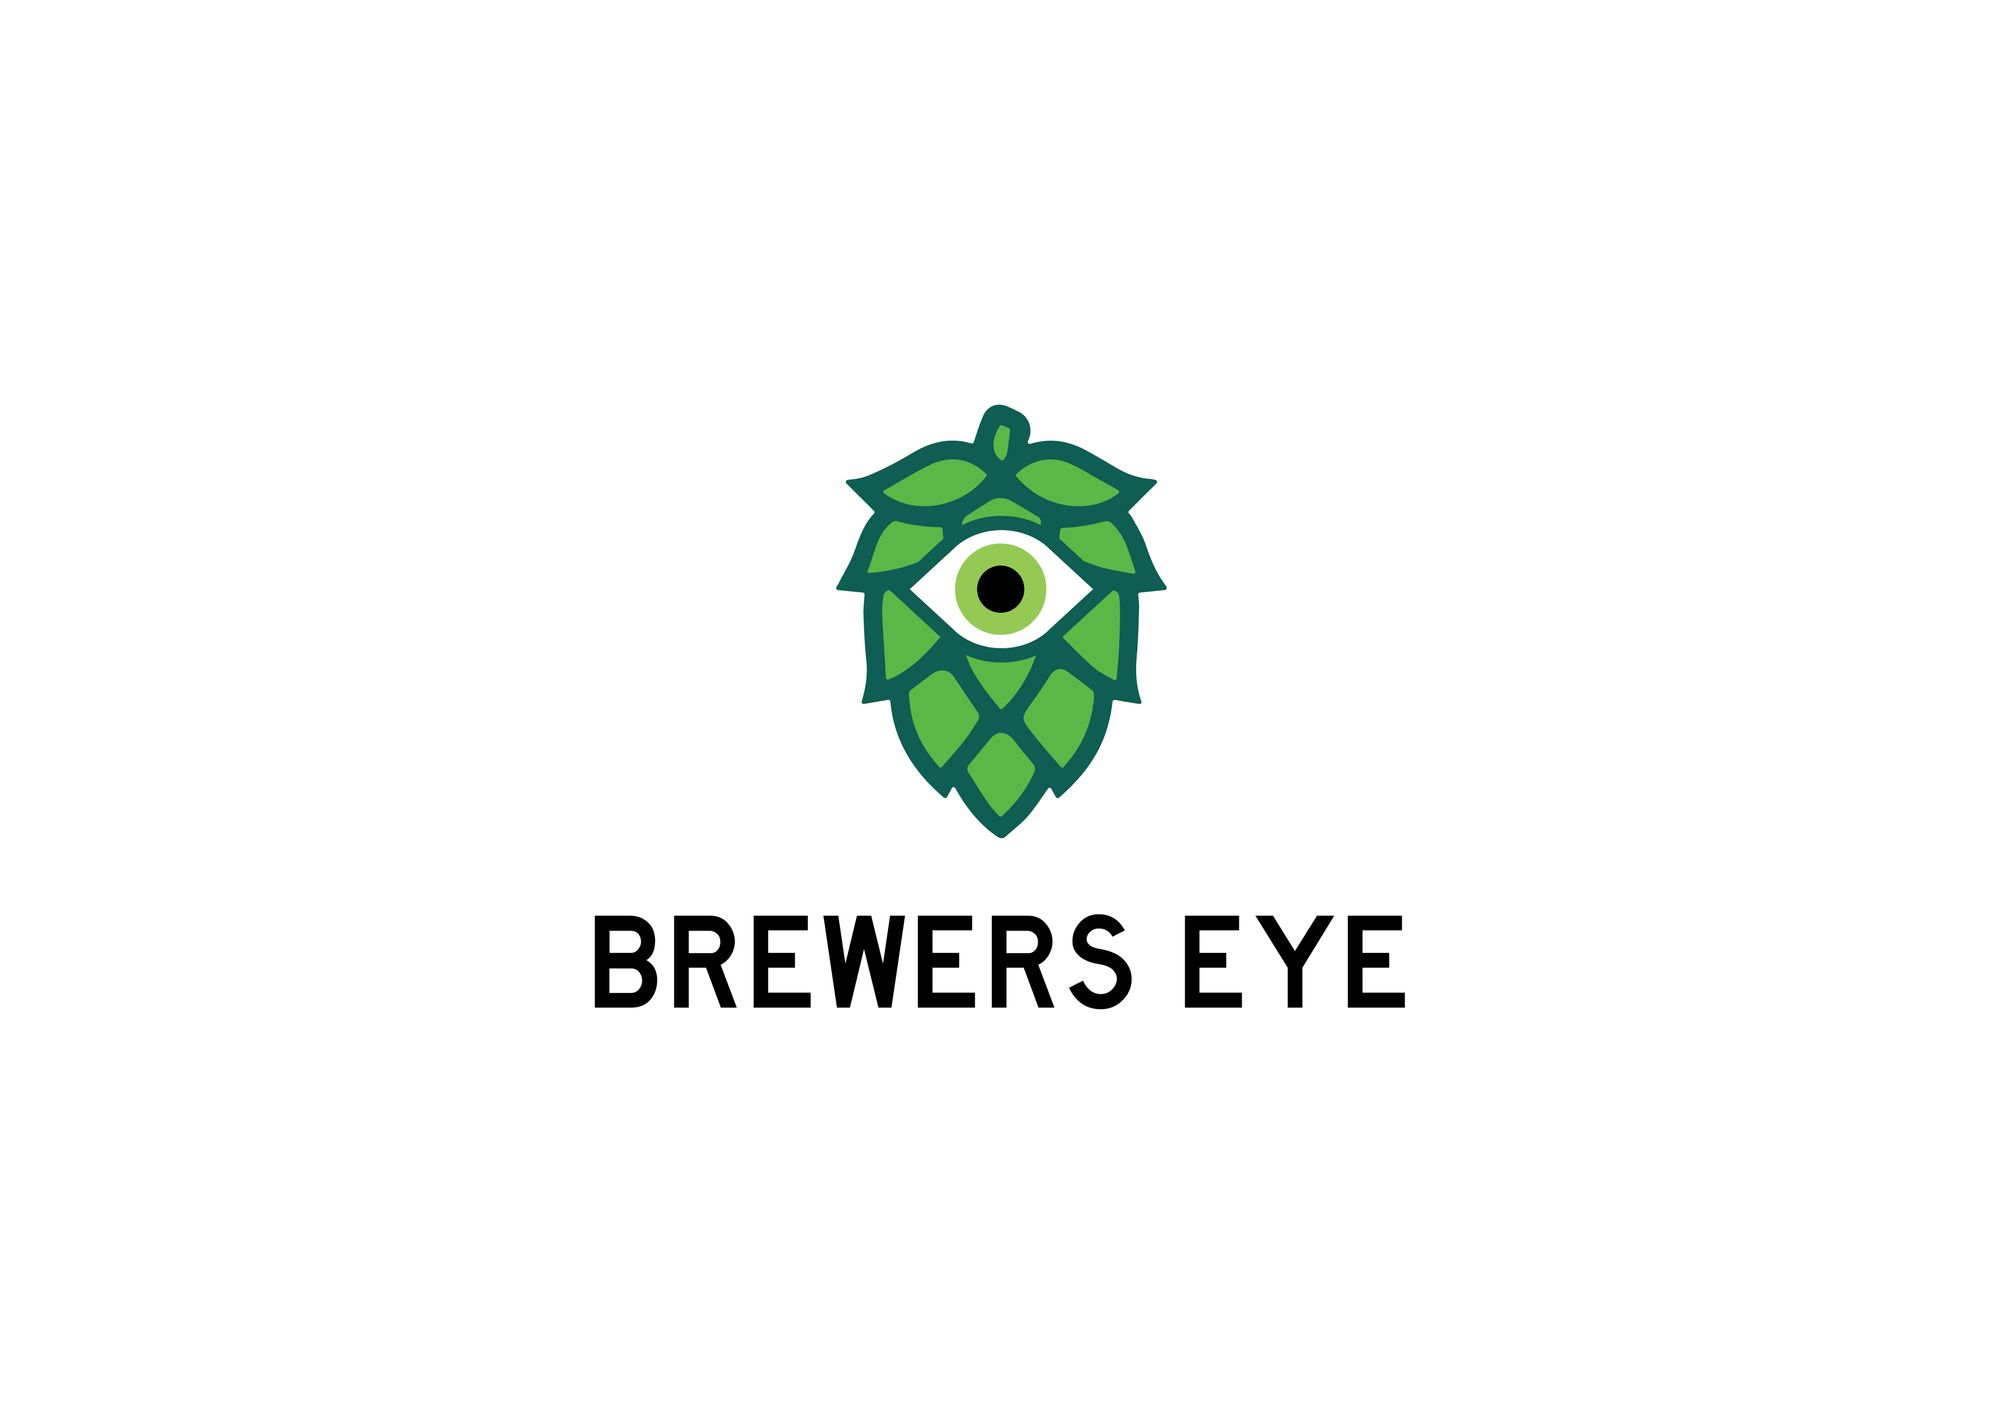 #GoSoloStories: Brewers Eye